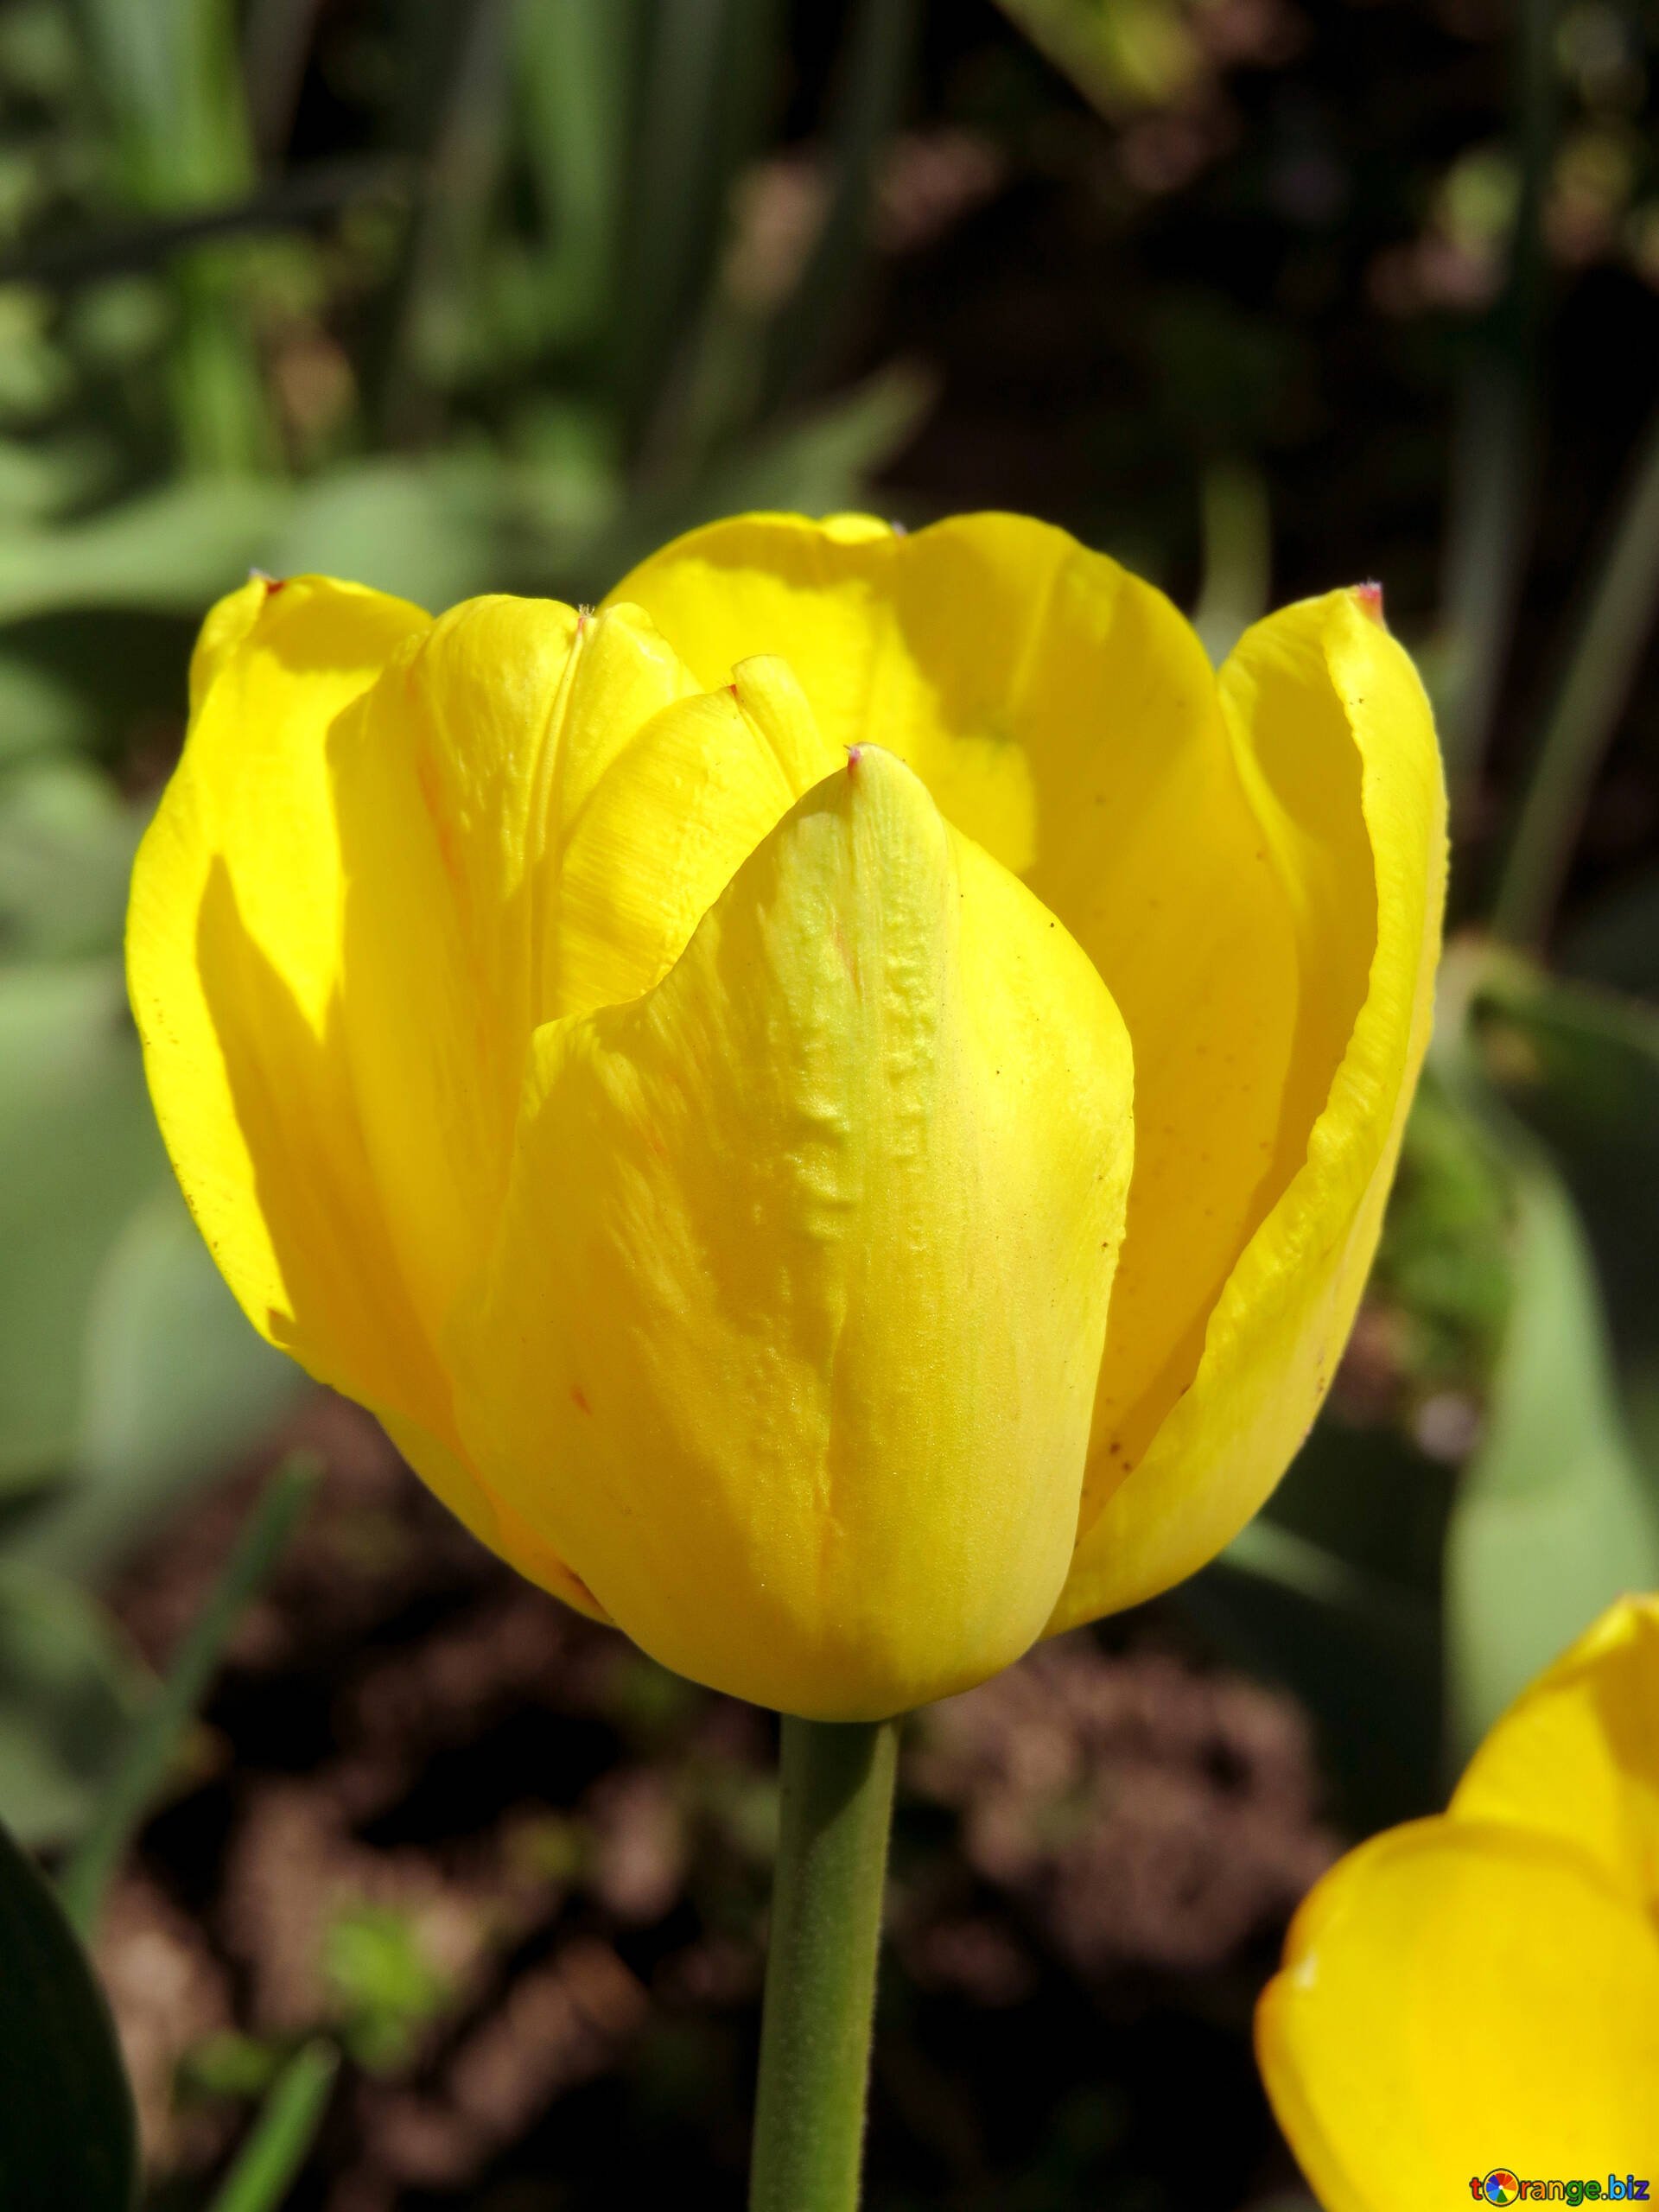 Tulipes jaunes image tulipe jaune vif images tulipe № 24017 | torange.biz